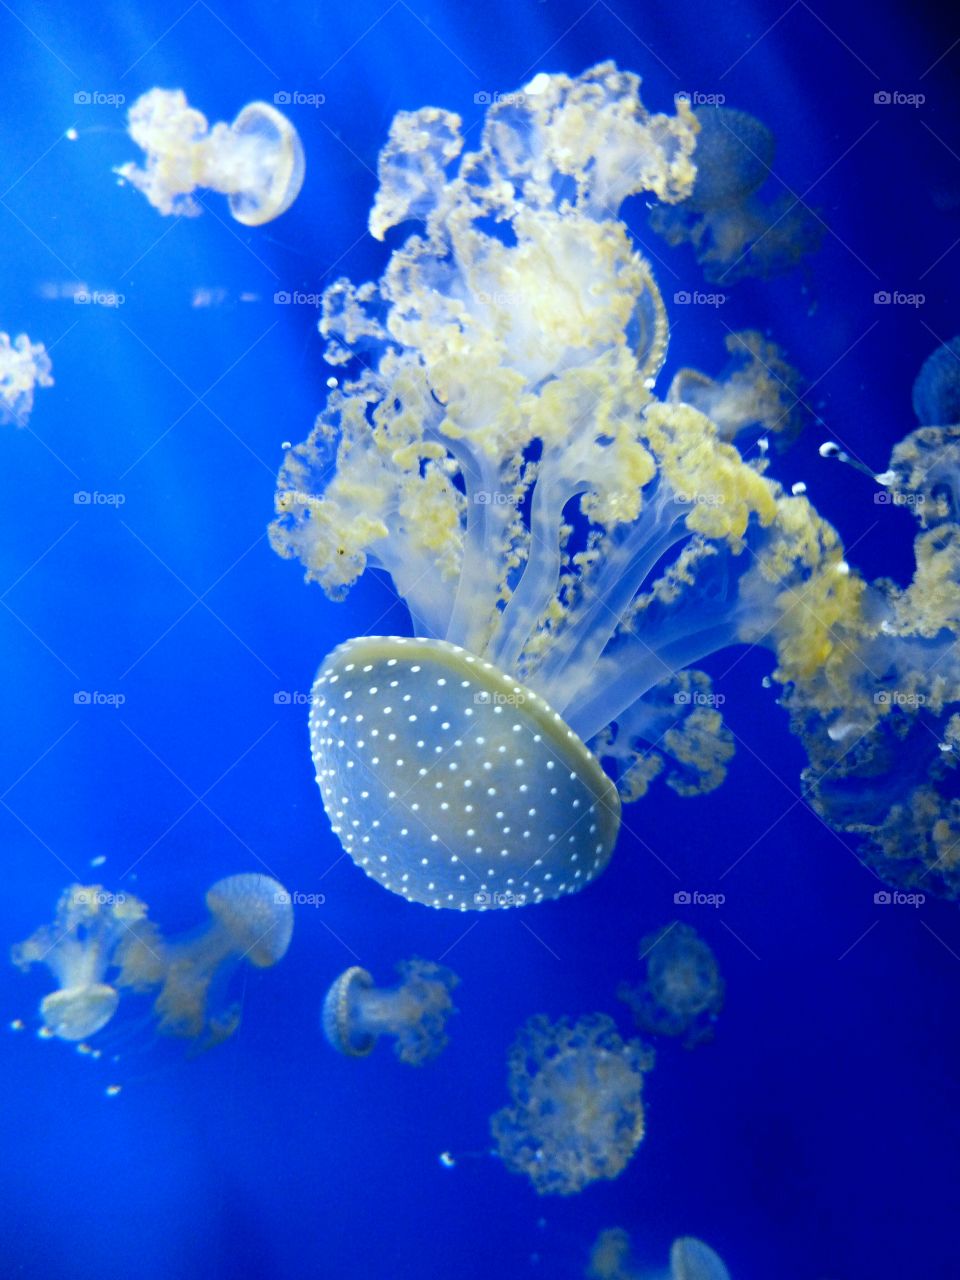 Underwater jellyfish